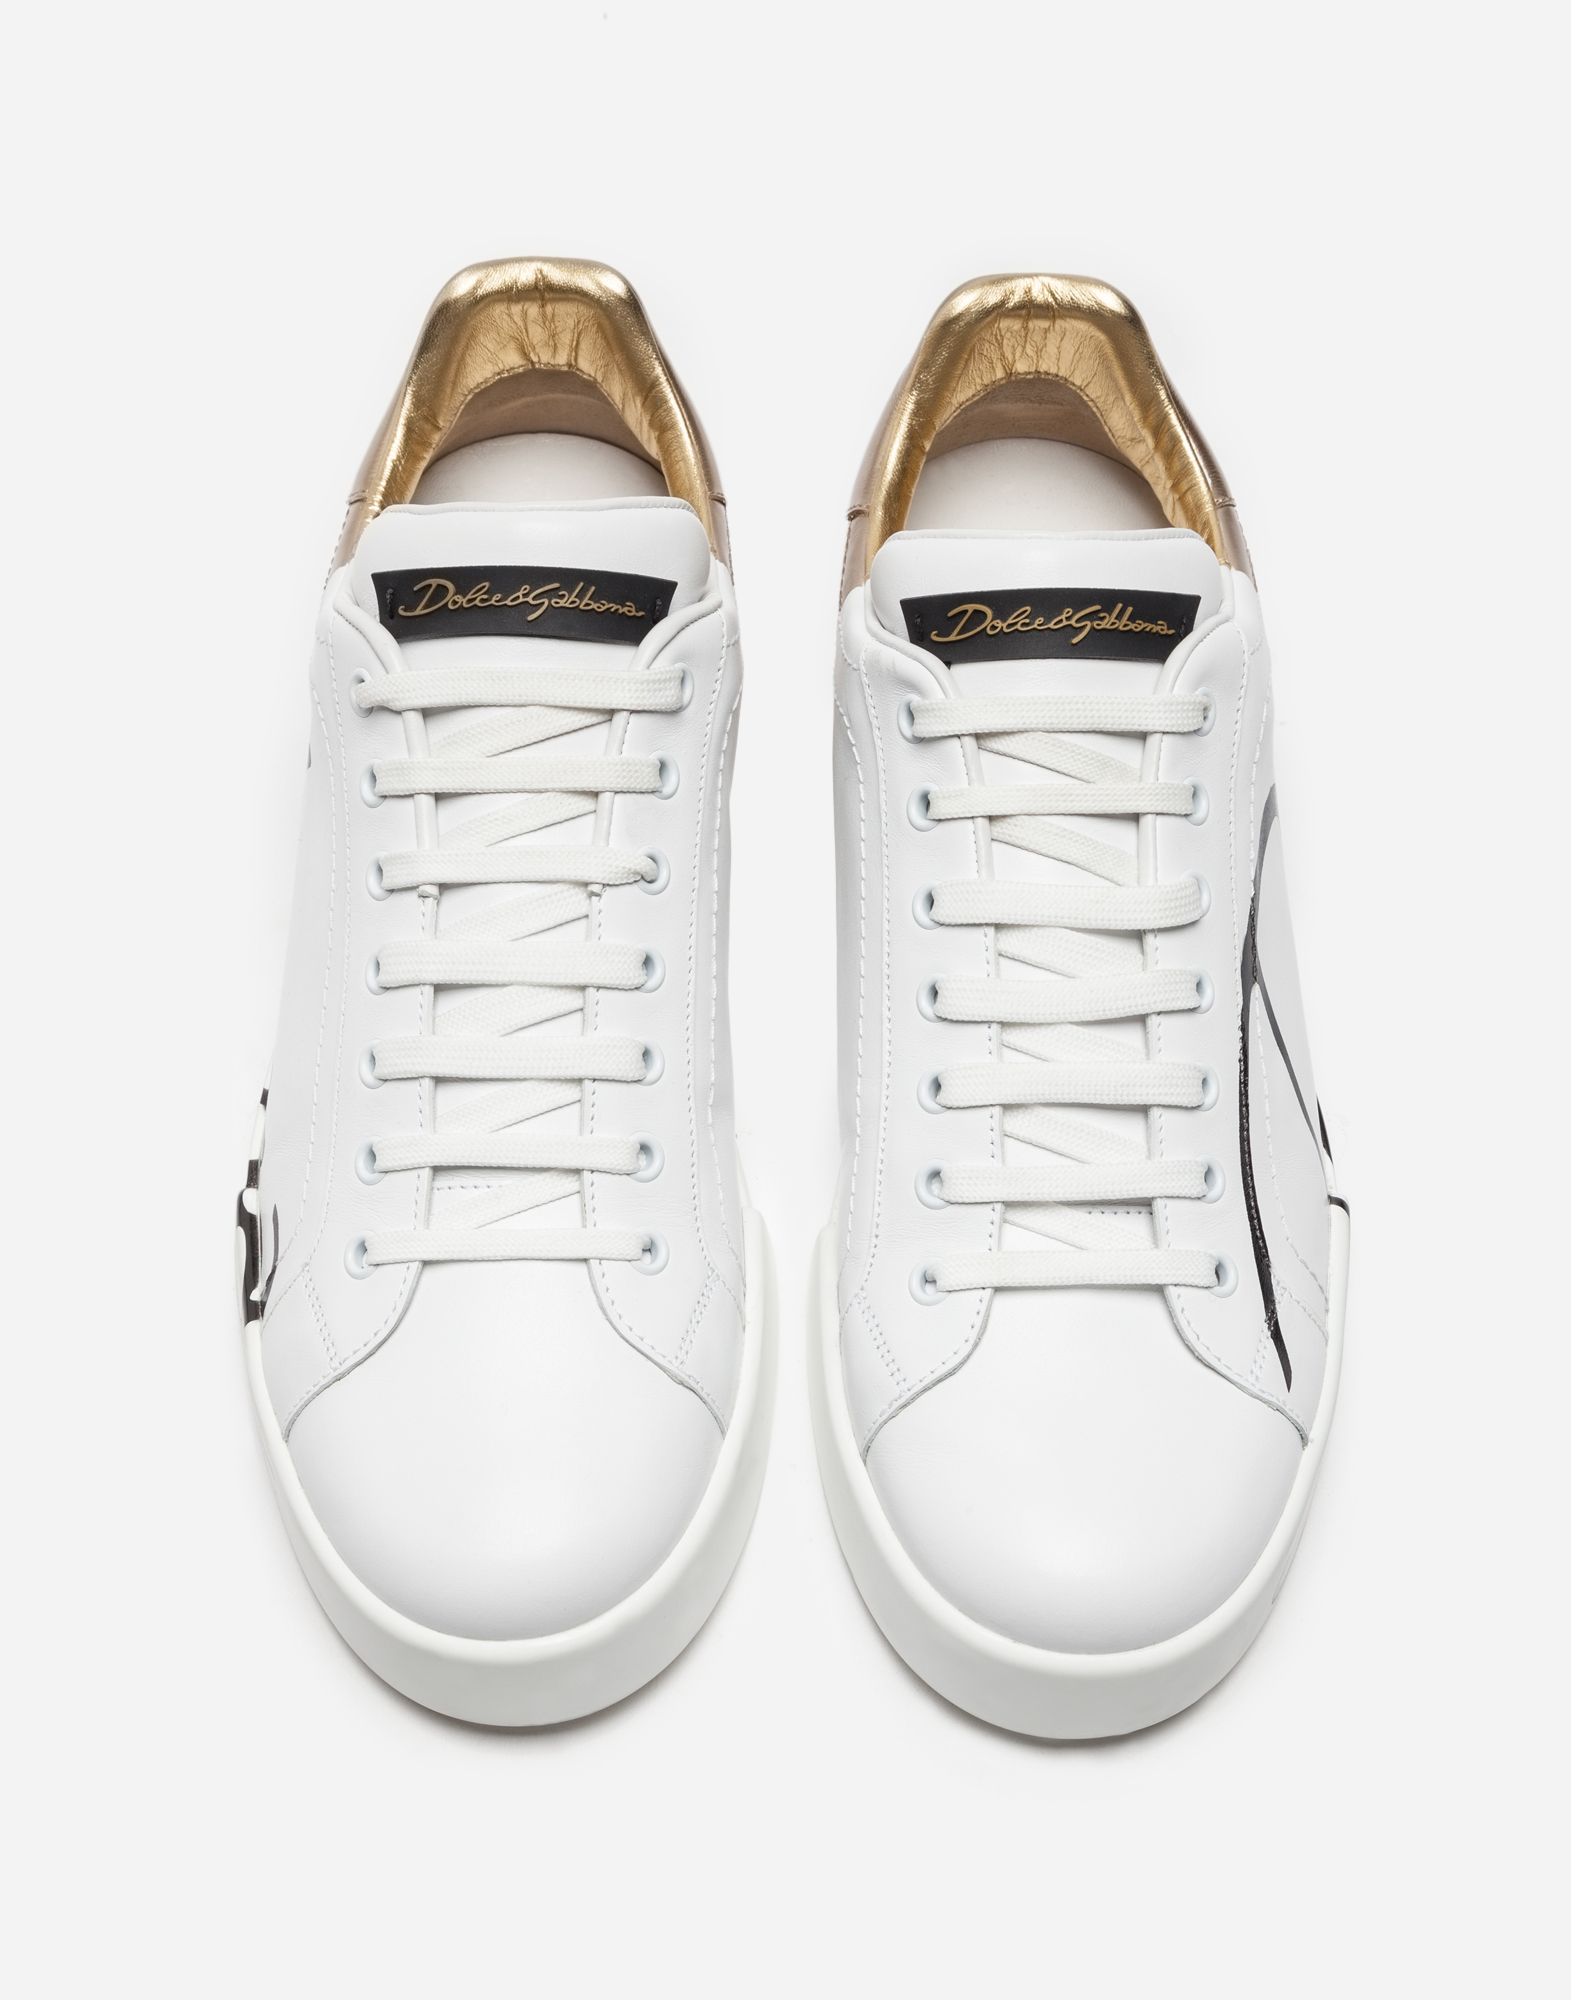 d&g white shoes